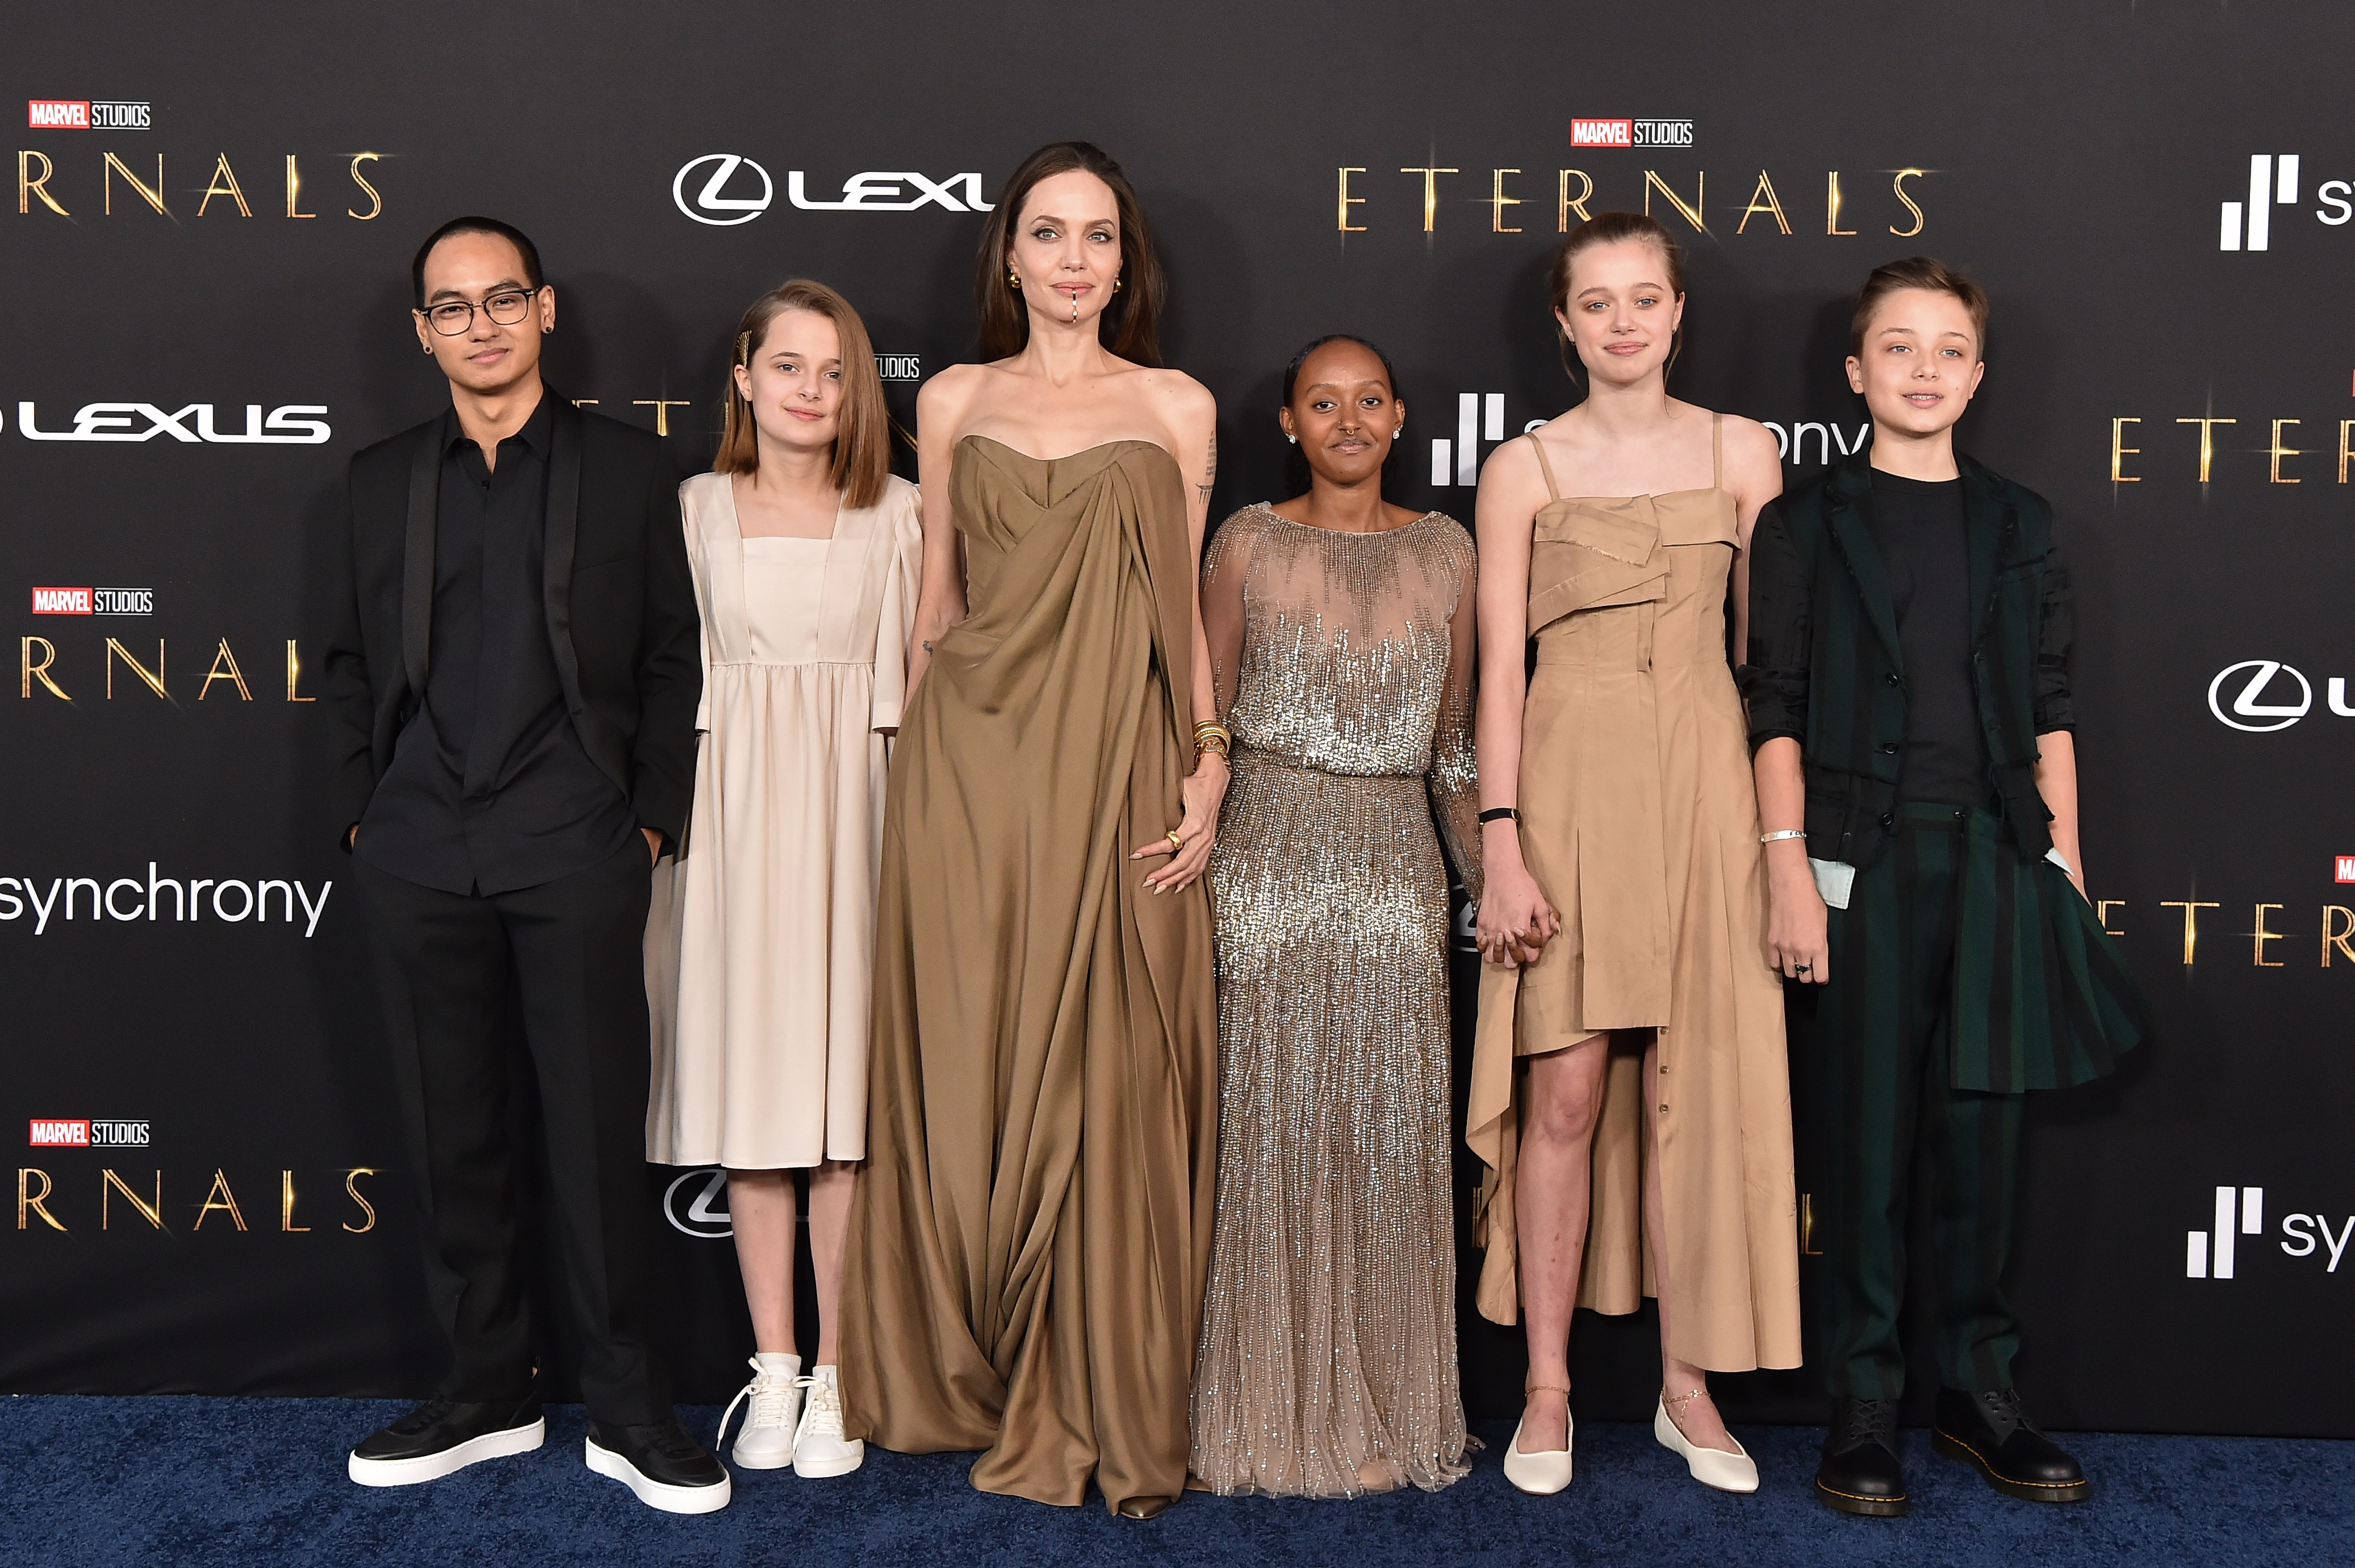 Maddox, Vivienne, Angelina Jolie, Knox, Shiloh et Zahara Jolie-Pitt assistent à la première à Los Angeles du film "Les Eternels" de Marvel Studios, à Los Angeles, en Californie, le 18 octobre 2021. | Source : Getty Images